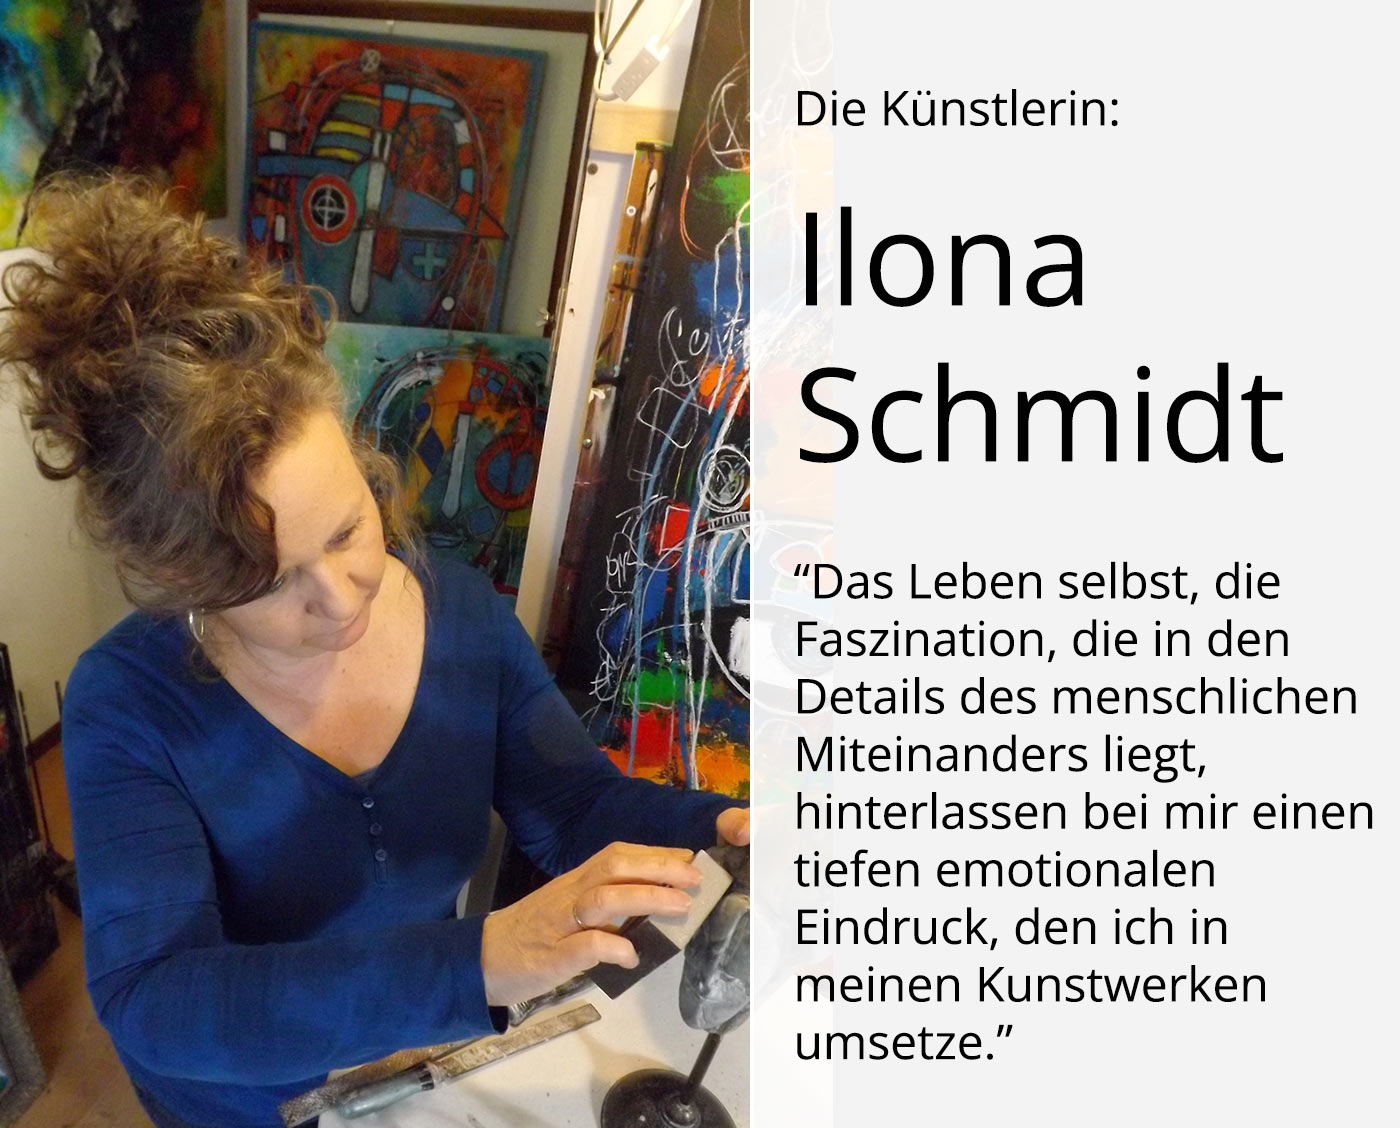 Zeitgenössische Grafik/Malerei, Ilona Schmidt: "Seite an Seite" (A)